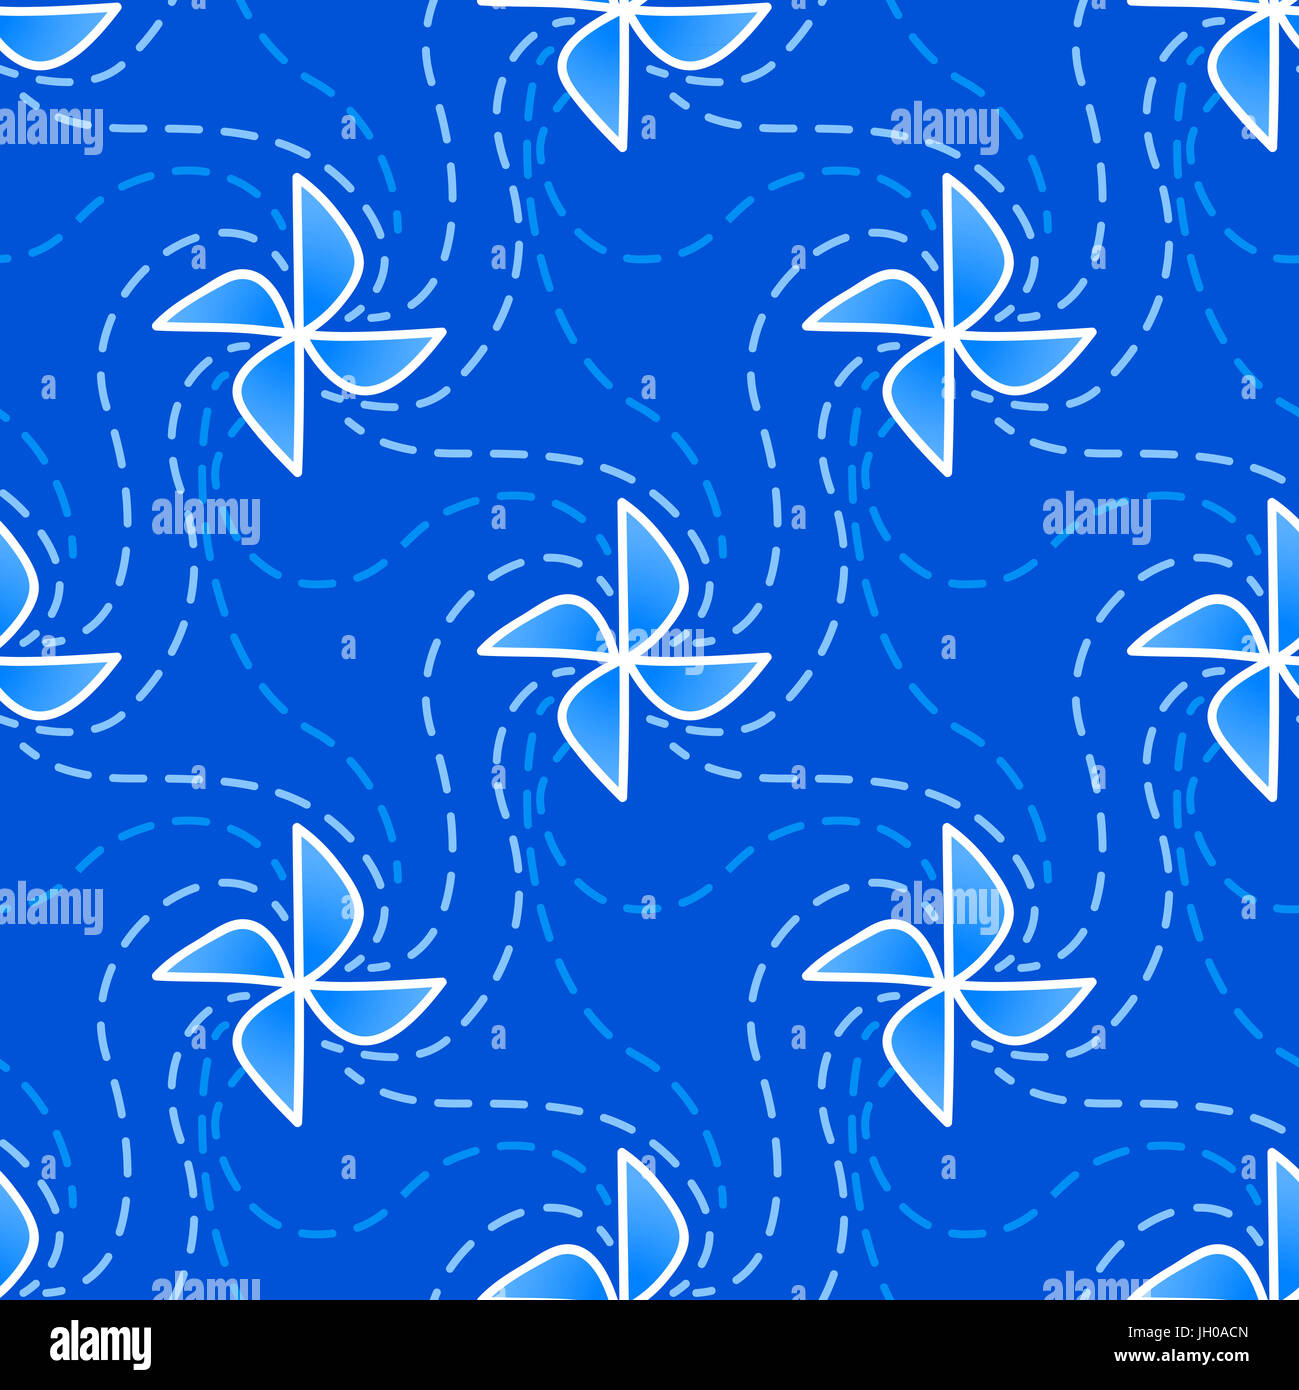 Global Wind Day 2017, Juni 15. Nahtlose Muster mit Windrad, Symbol des Windparks. skizzenhafte aneinander Hintergrund, blau und weiß Stockfoto